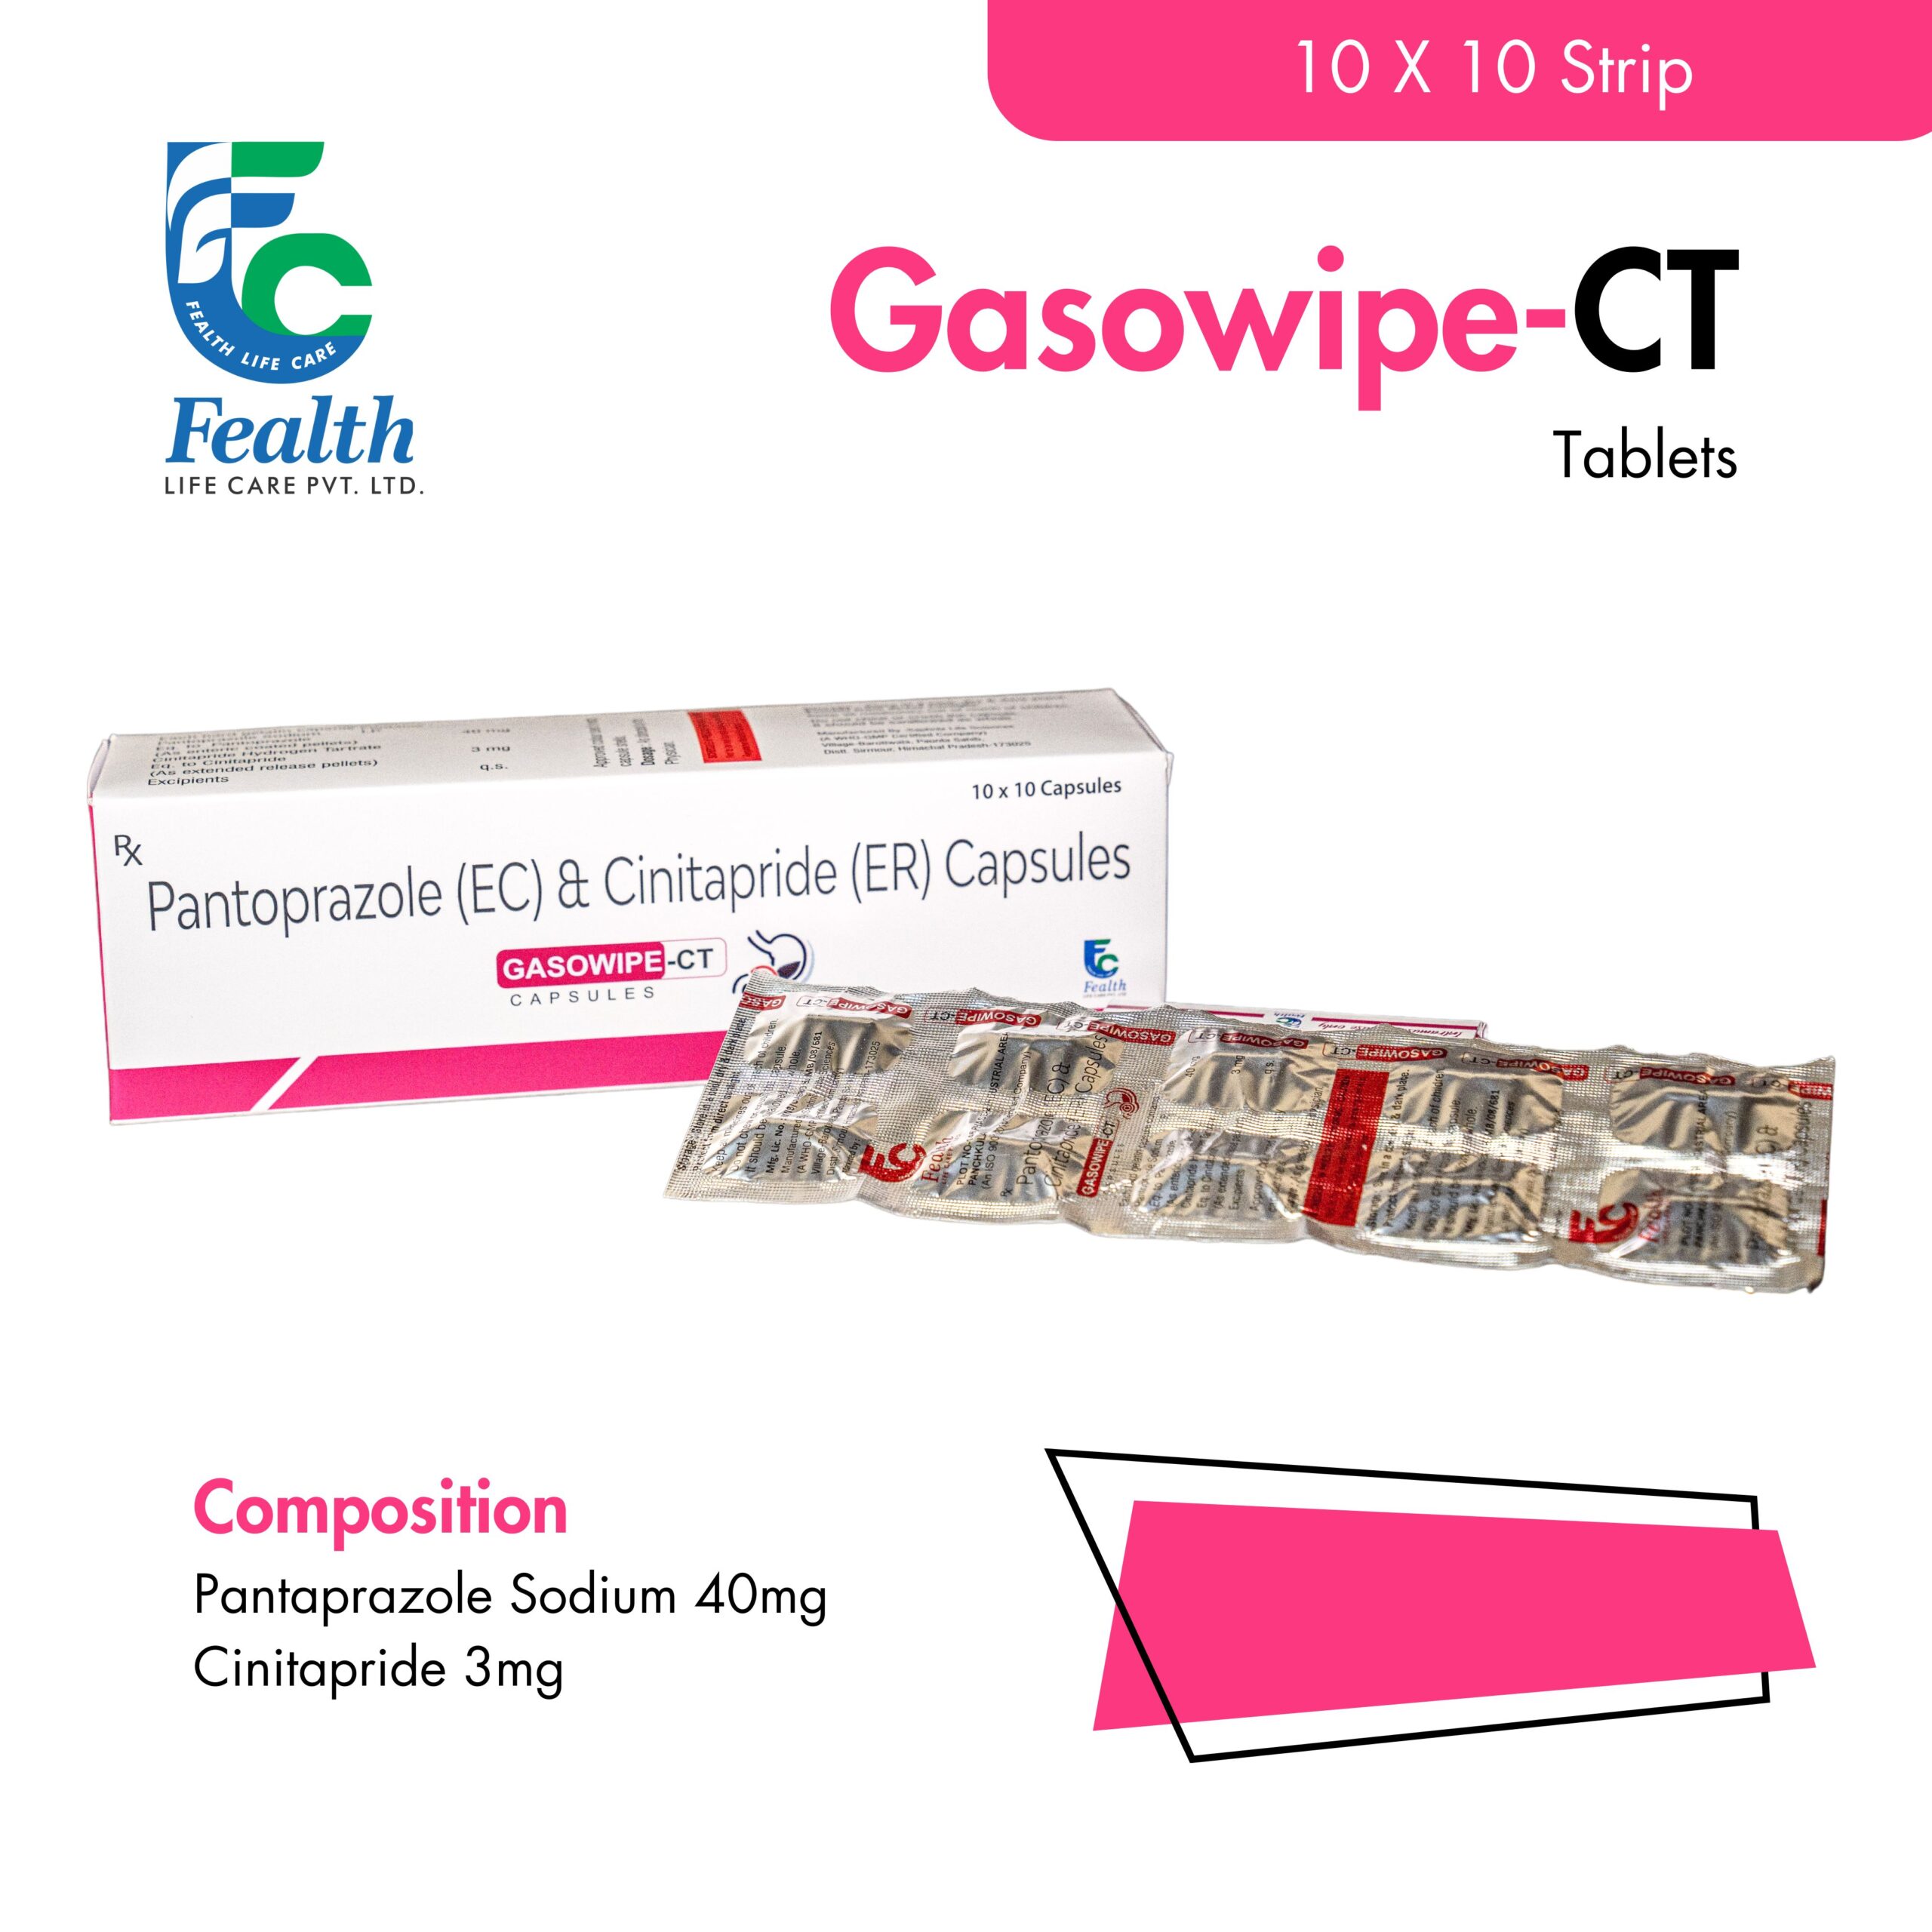 Gasowipe-CT